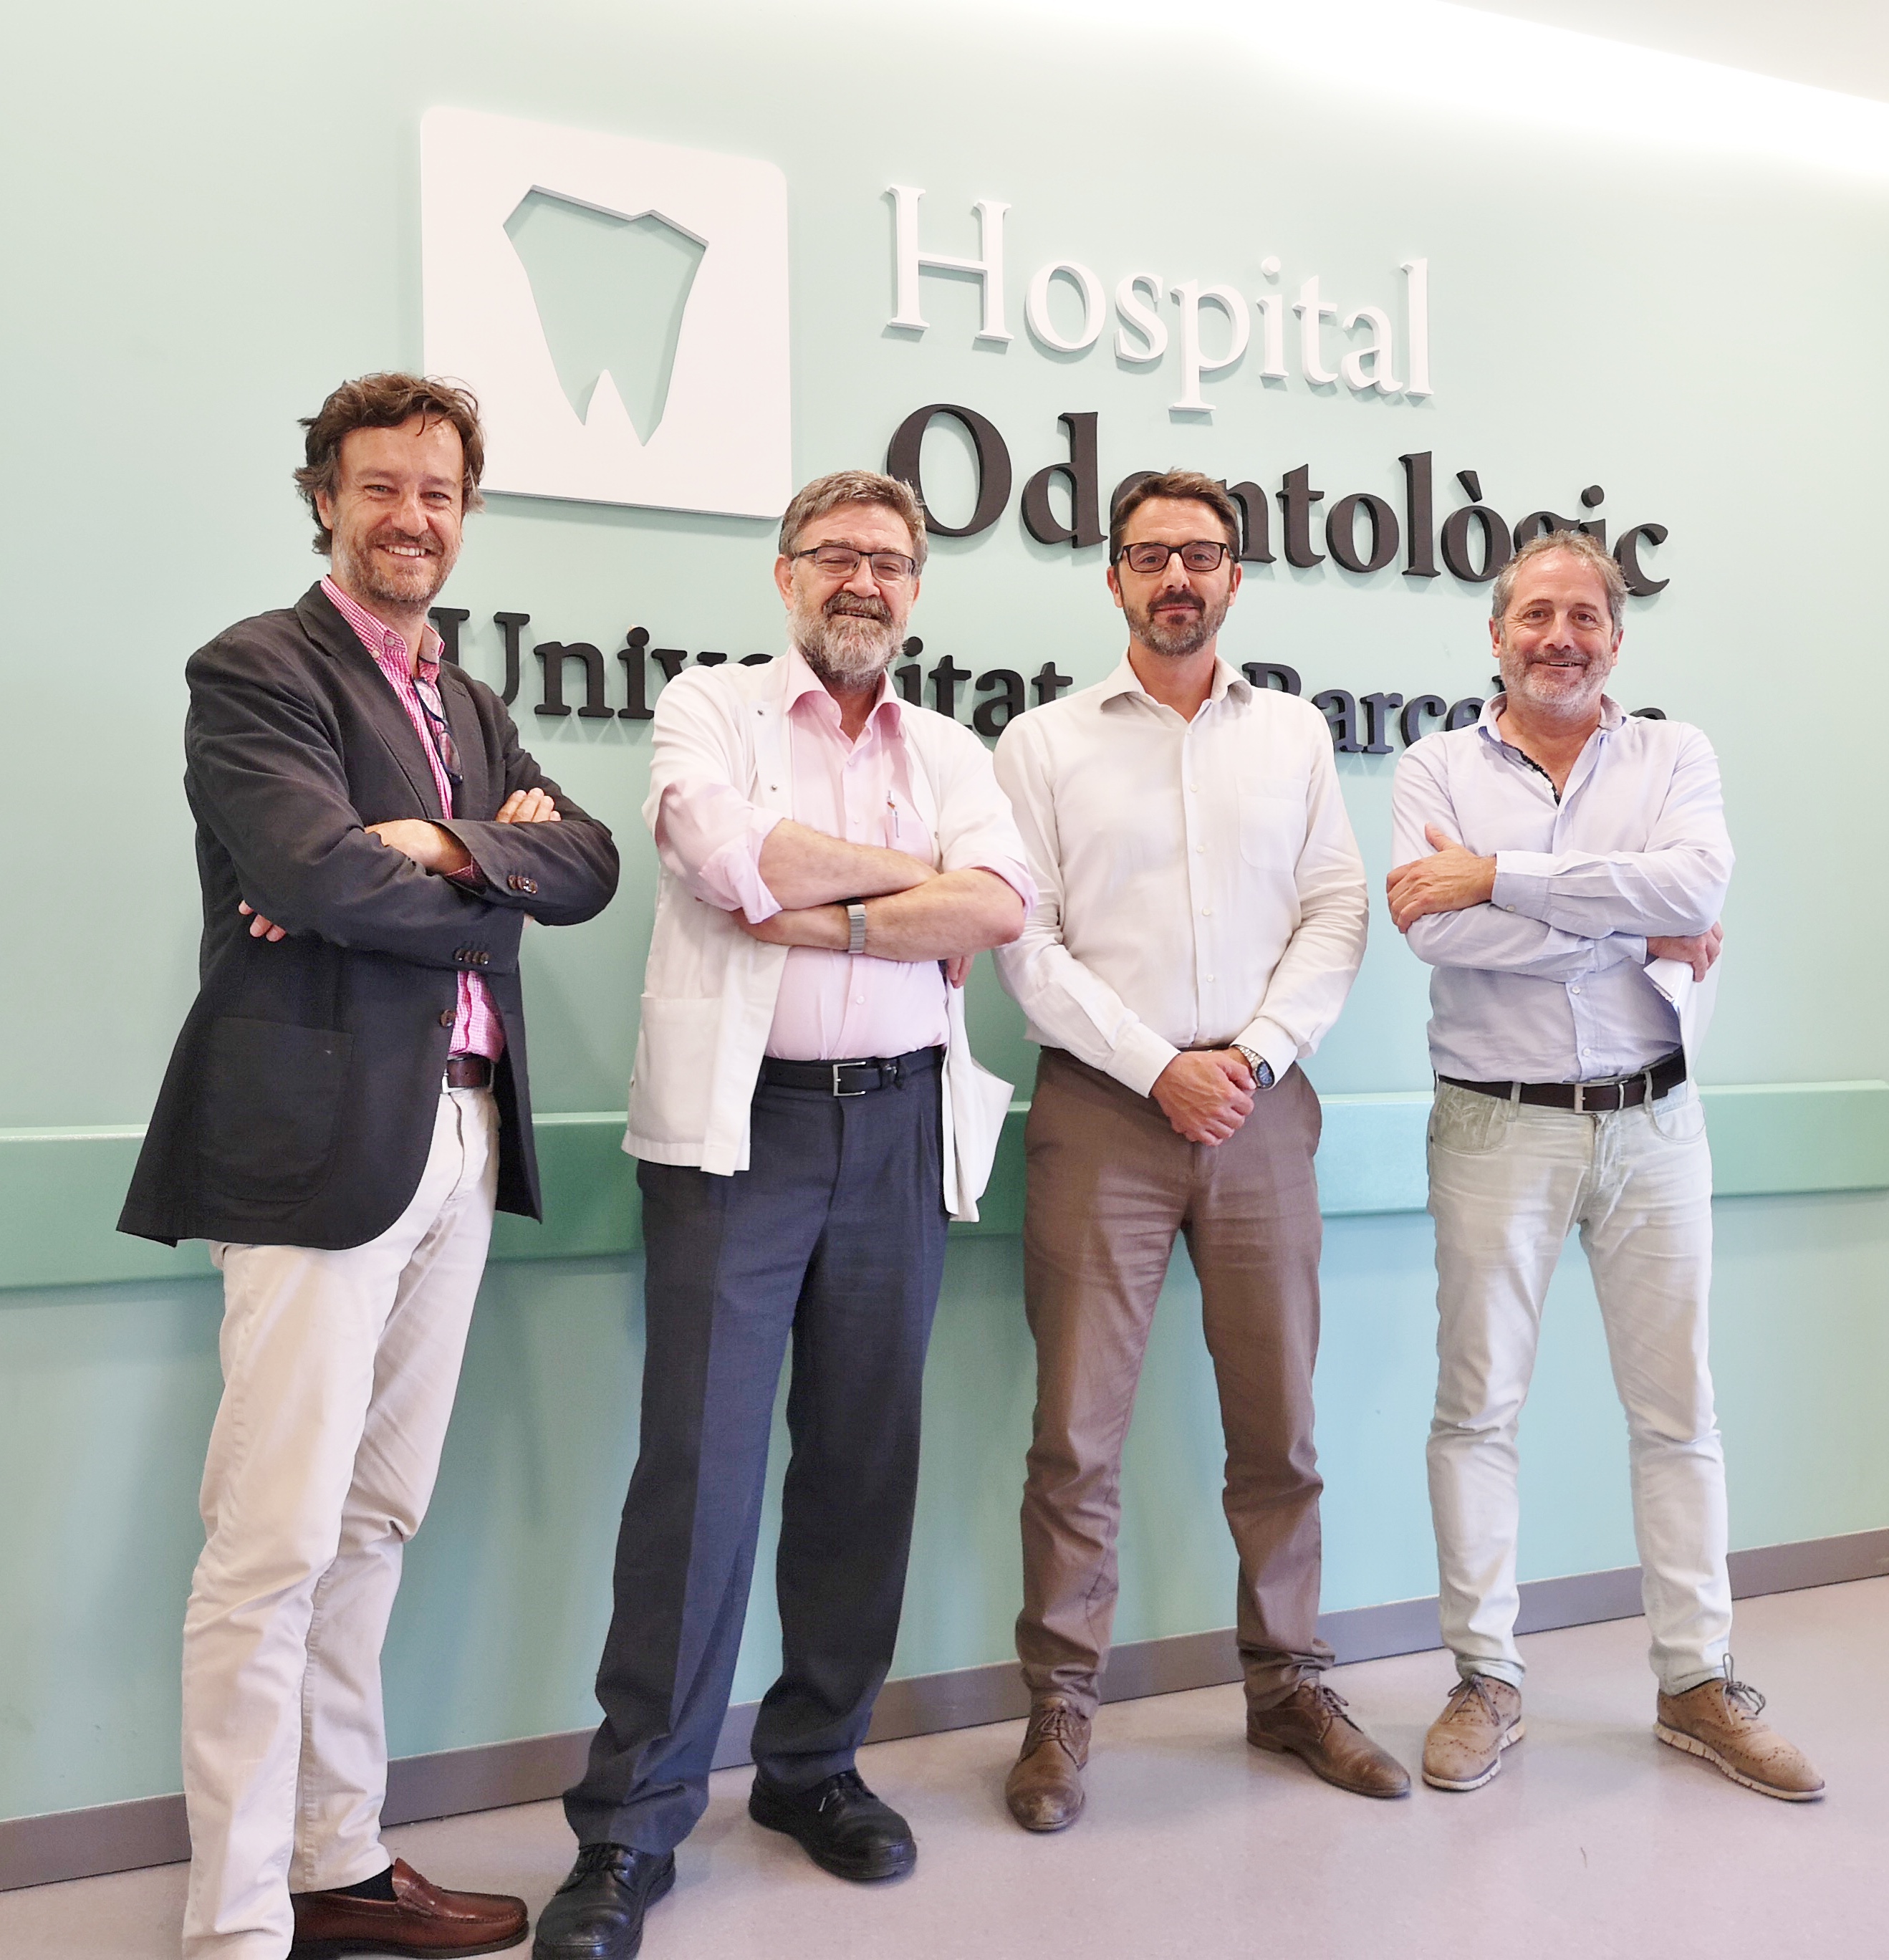 BIONER, S.A i el Master de Medicina, Cirugía e Implantología Oral firman un convenio de colaboración para iniciar un nuevo ensayo clínico en el Hospital Odontològic UB